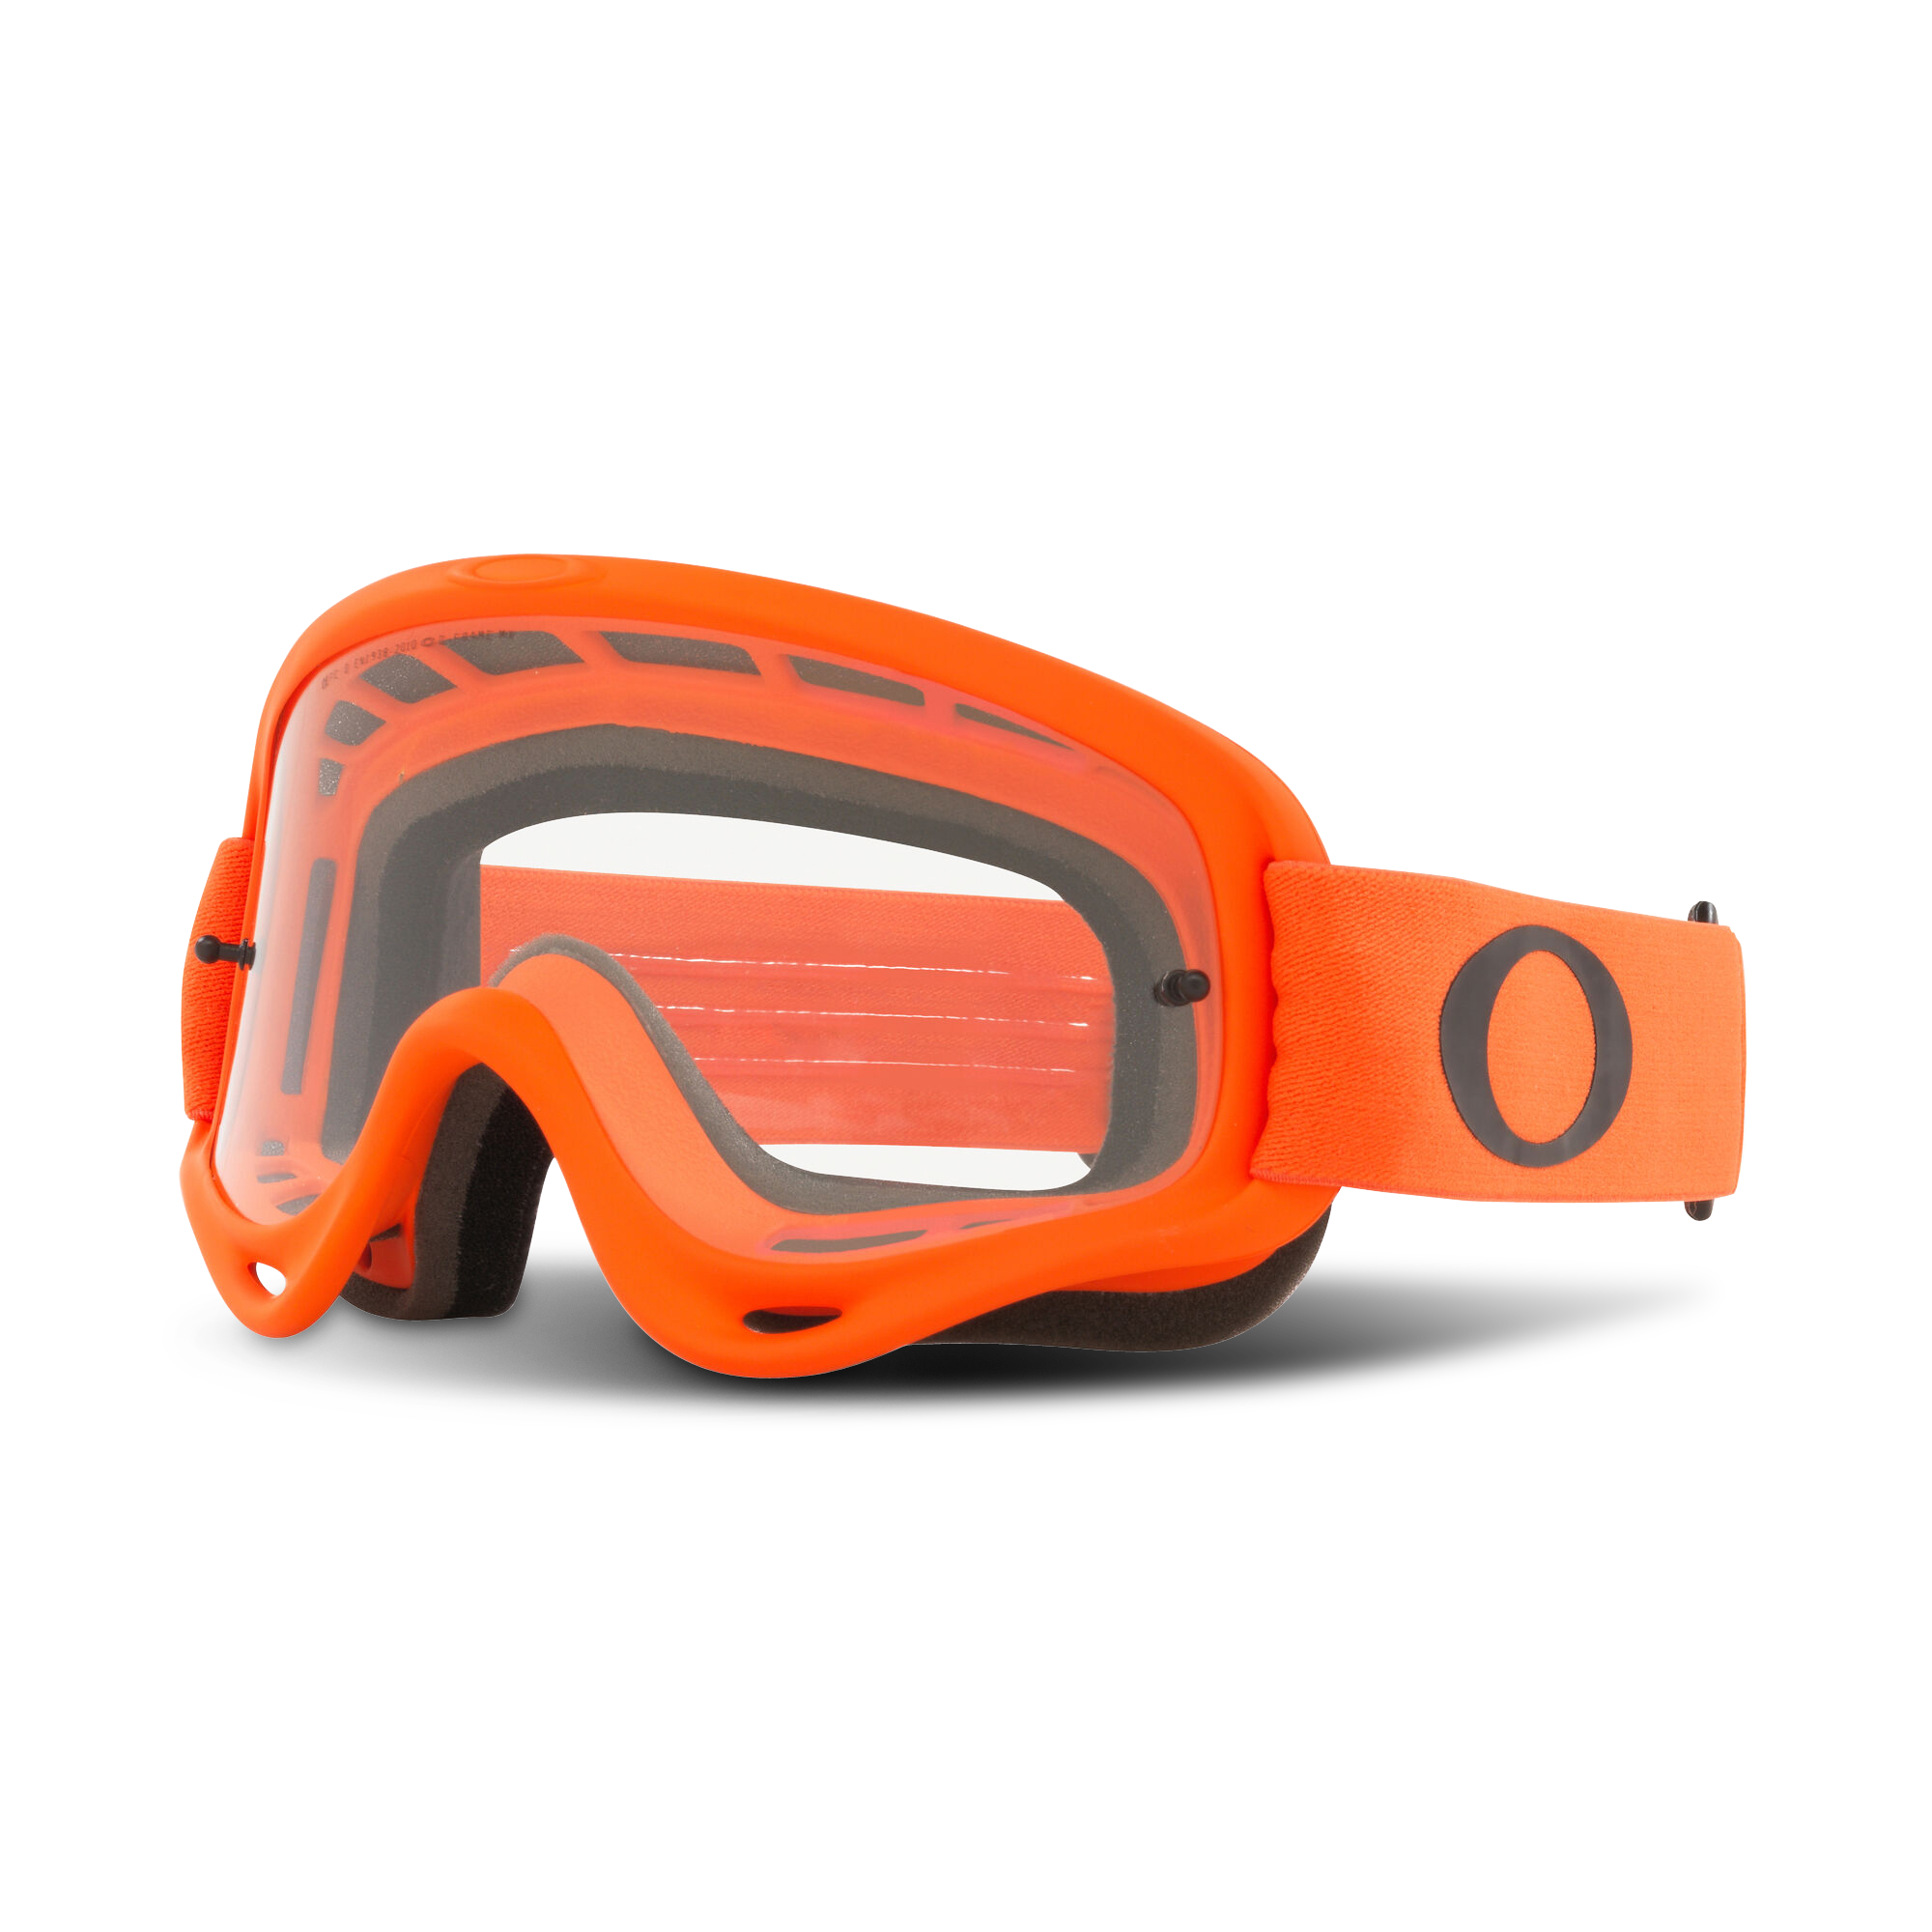 Oakley – Occhiali e maschere Oakley ad un prezzo promozionale su